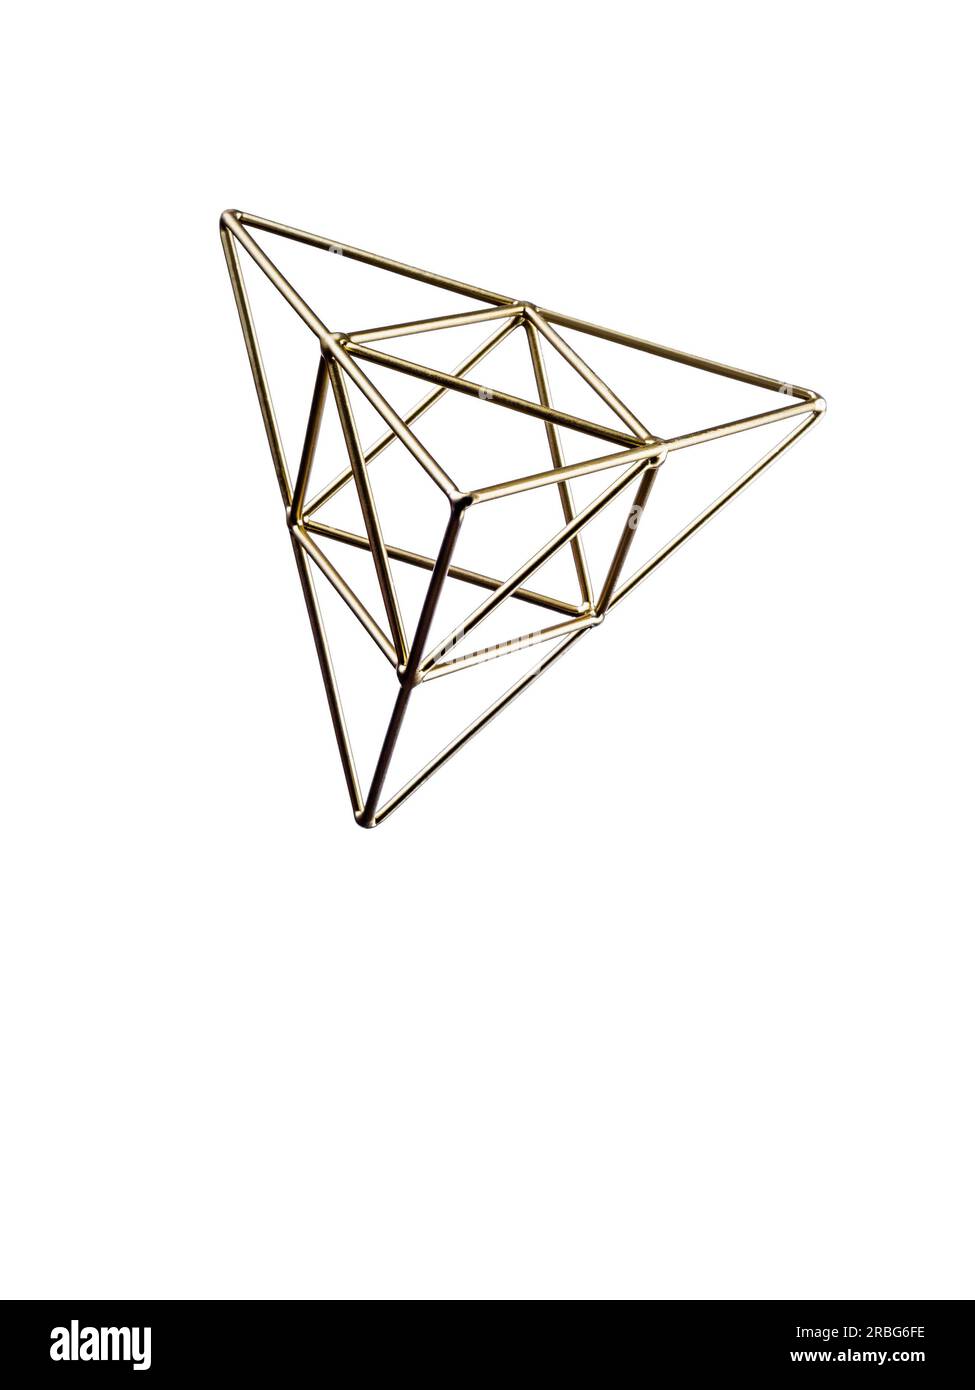 Golden pyramide triangulaire isolé sur fond blanc, trigonométrique représentation d'un volume Banque D'Images